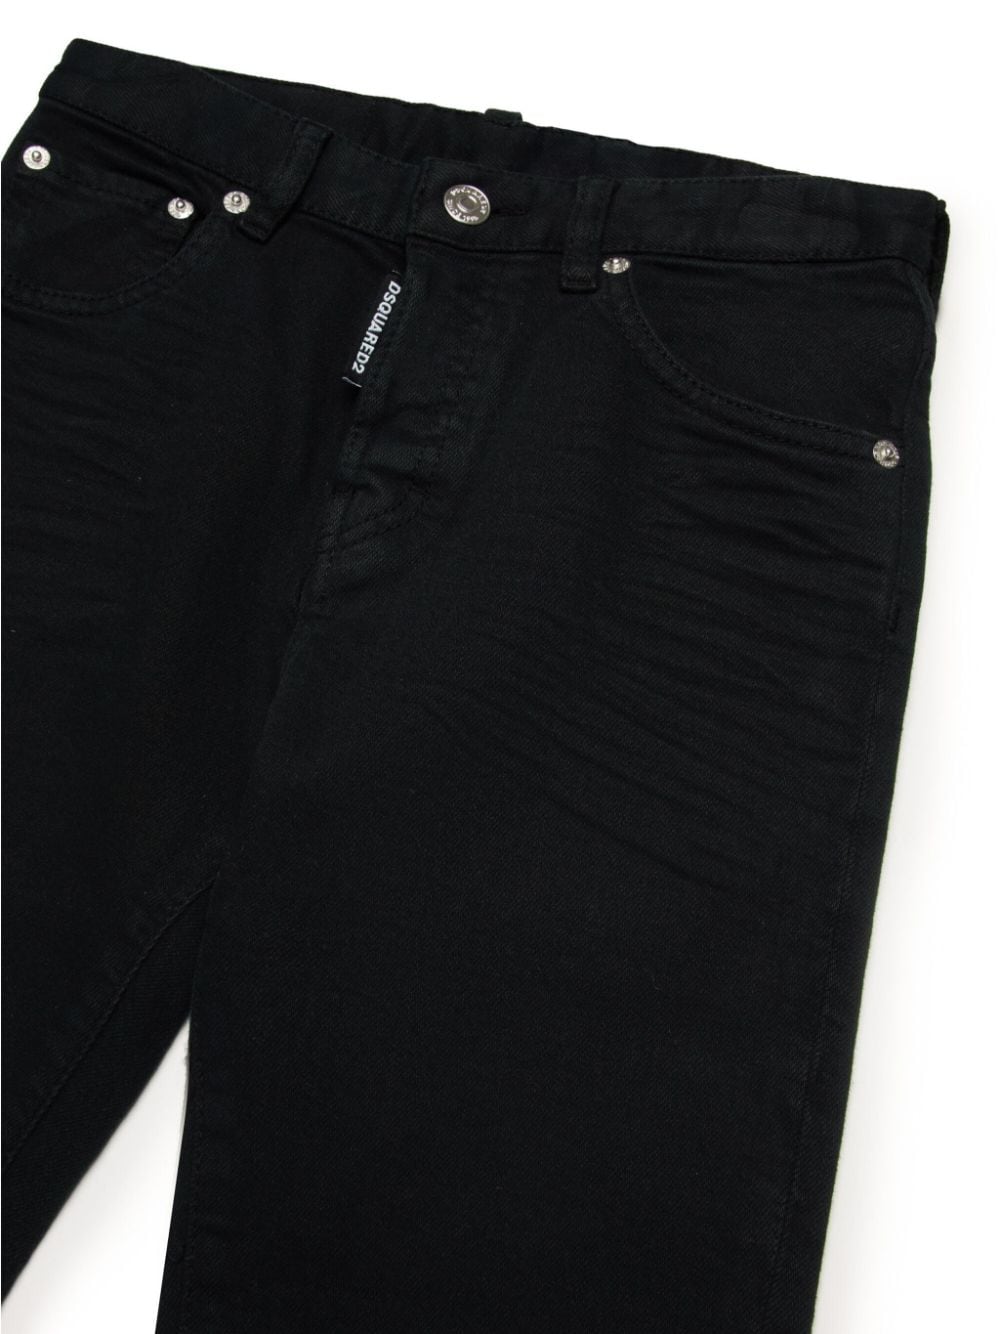 Jeans per bambino in cotone nero